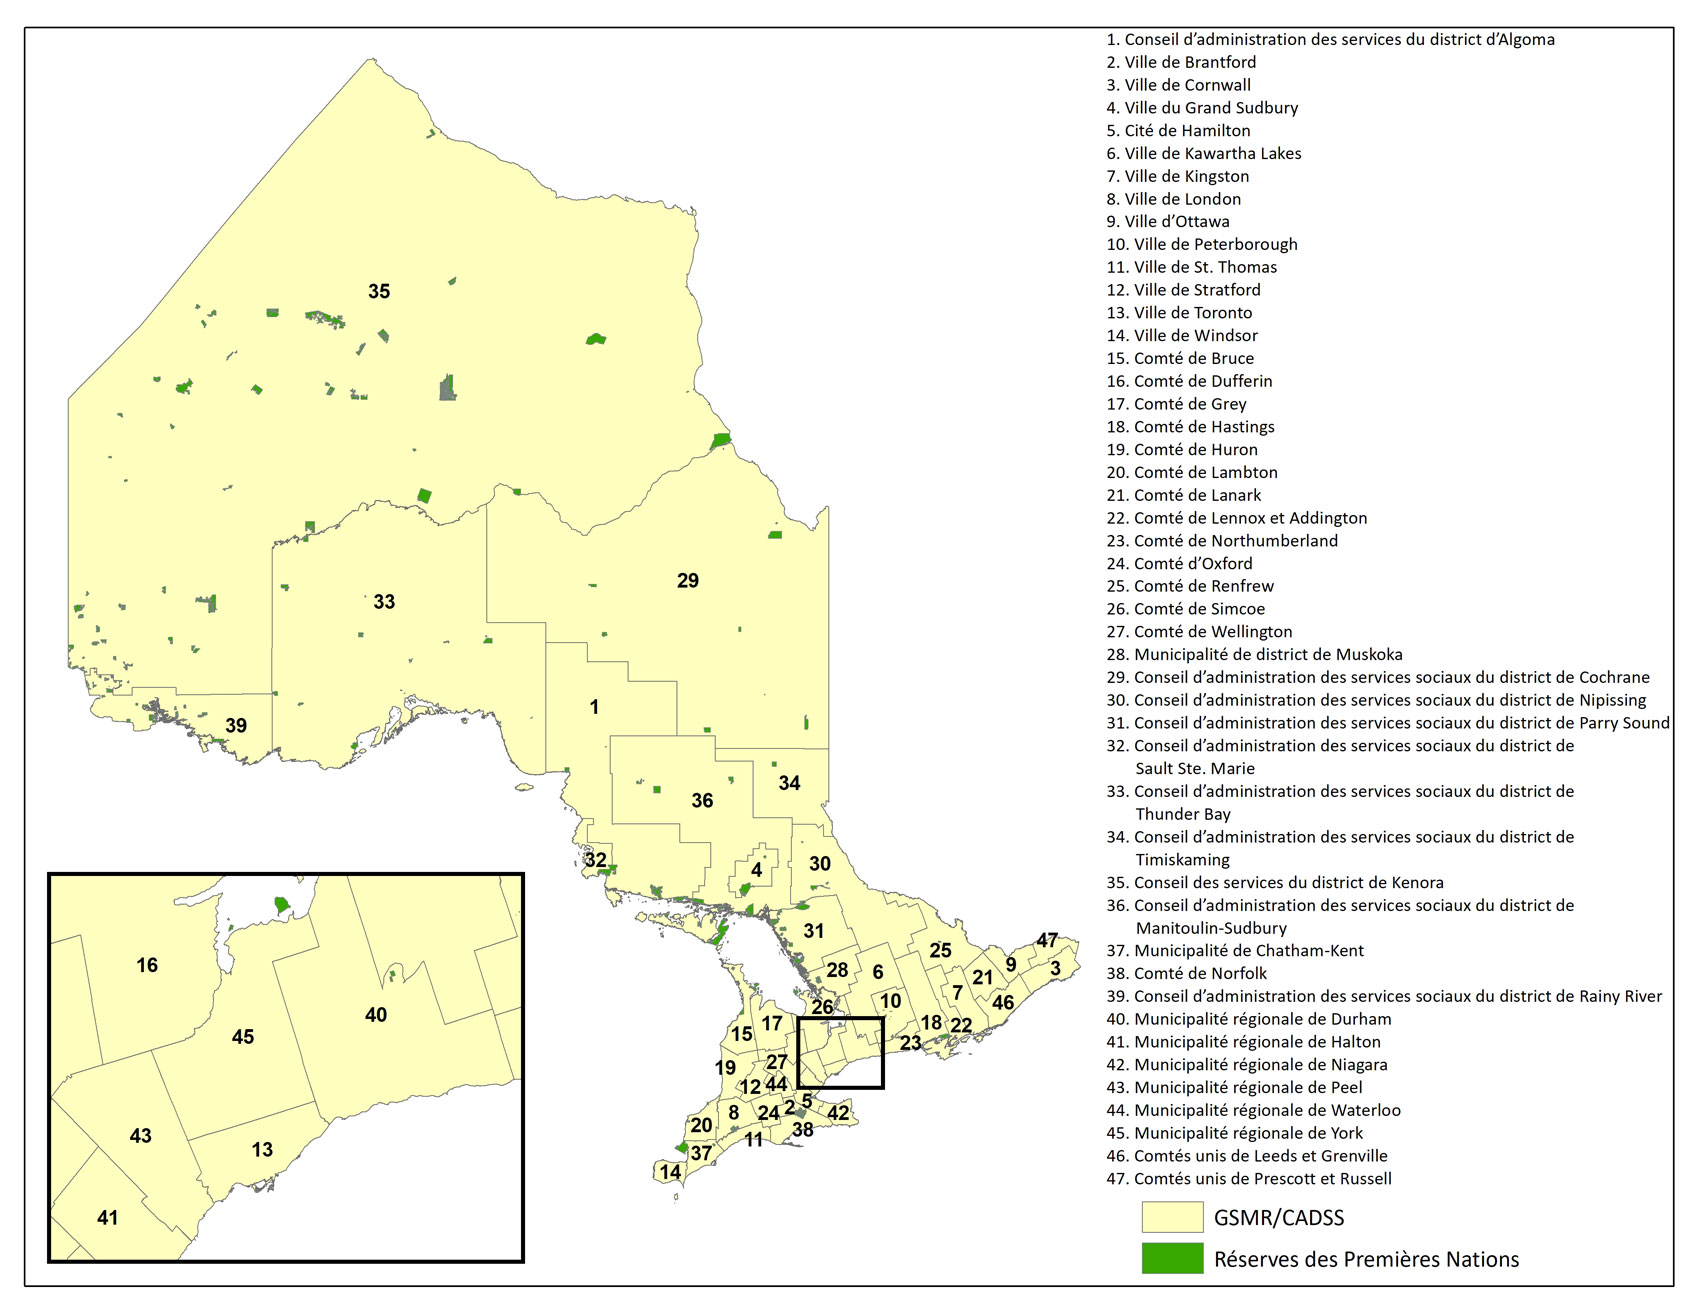 Carte de l'Ontario : Gestionnaires des services municipaux regroupés et conseils d’administration de district des services sociaux en Ontario